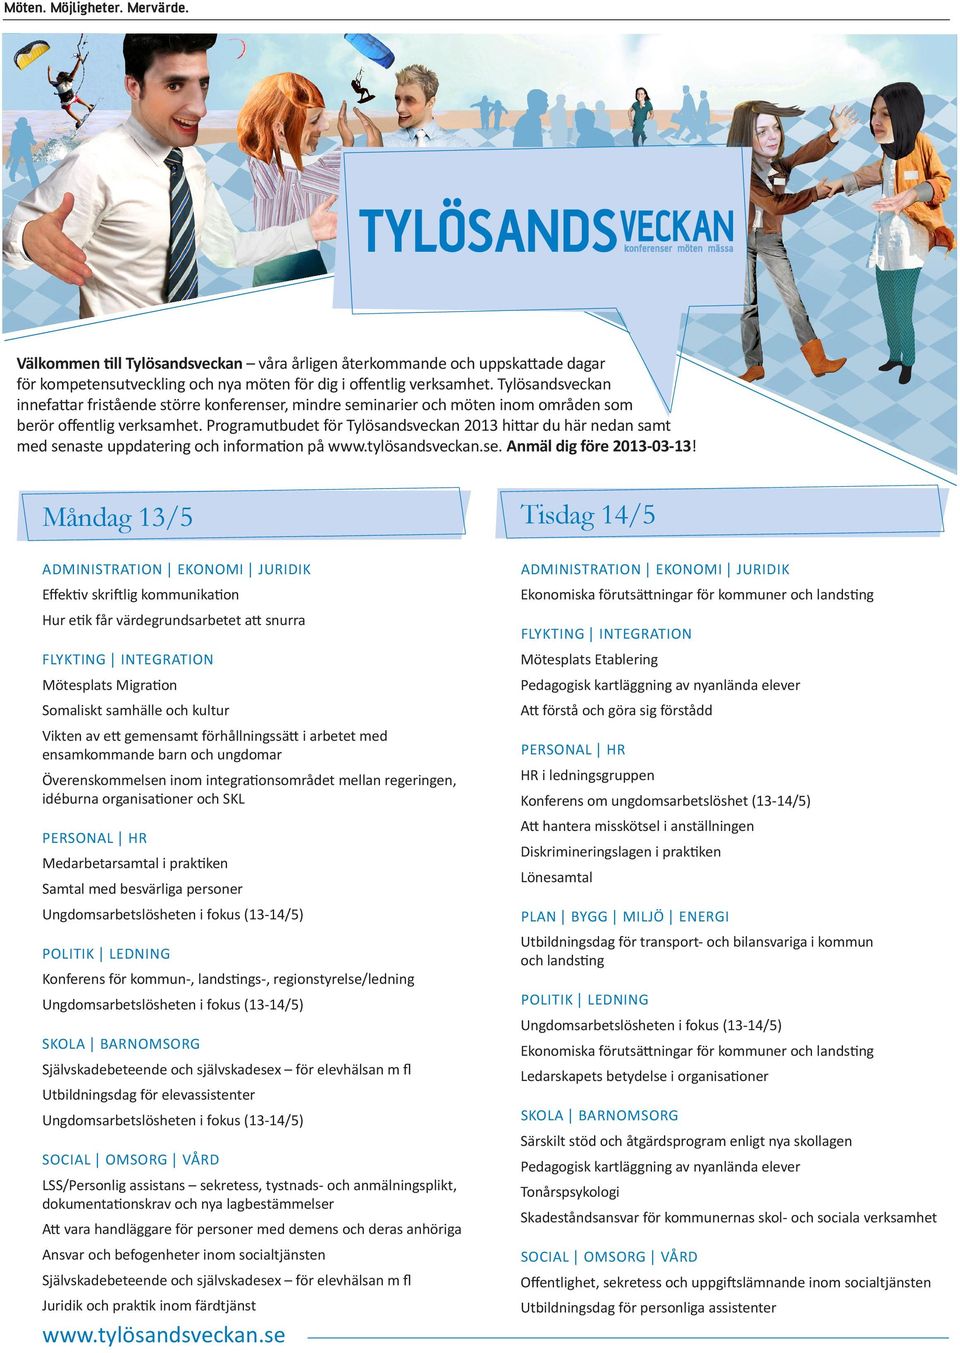 Programutbudet för Tylösandsveckan 2013 hittar du här nedan samt med senaste uppdatering och information på www.tylösandsveckan.se. Anmäl dig före 2013-03-13!